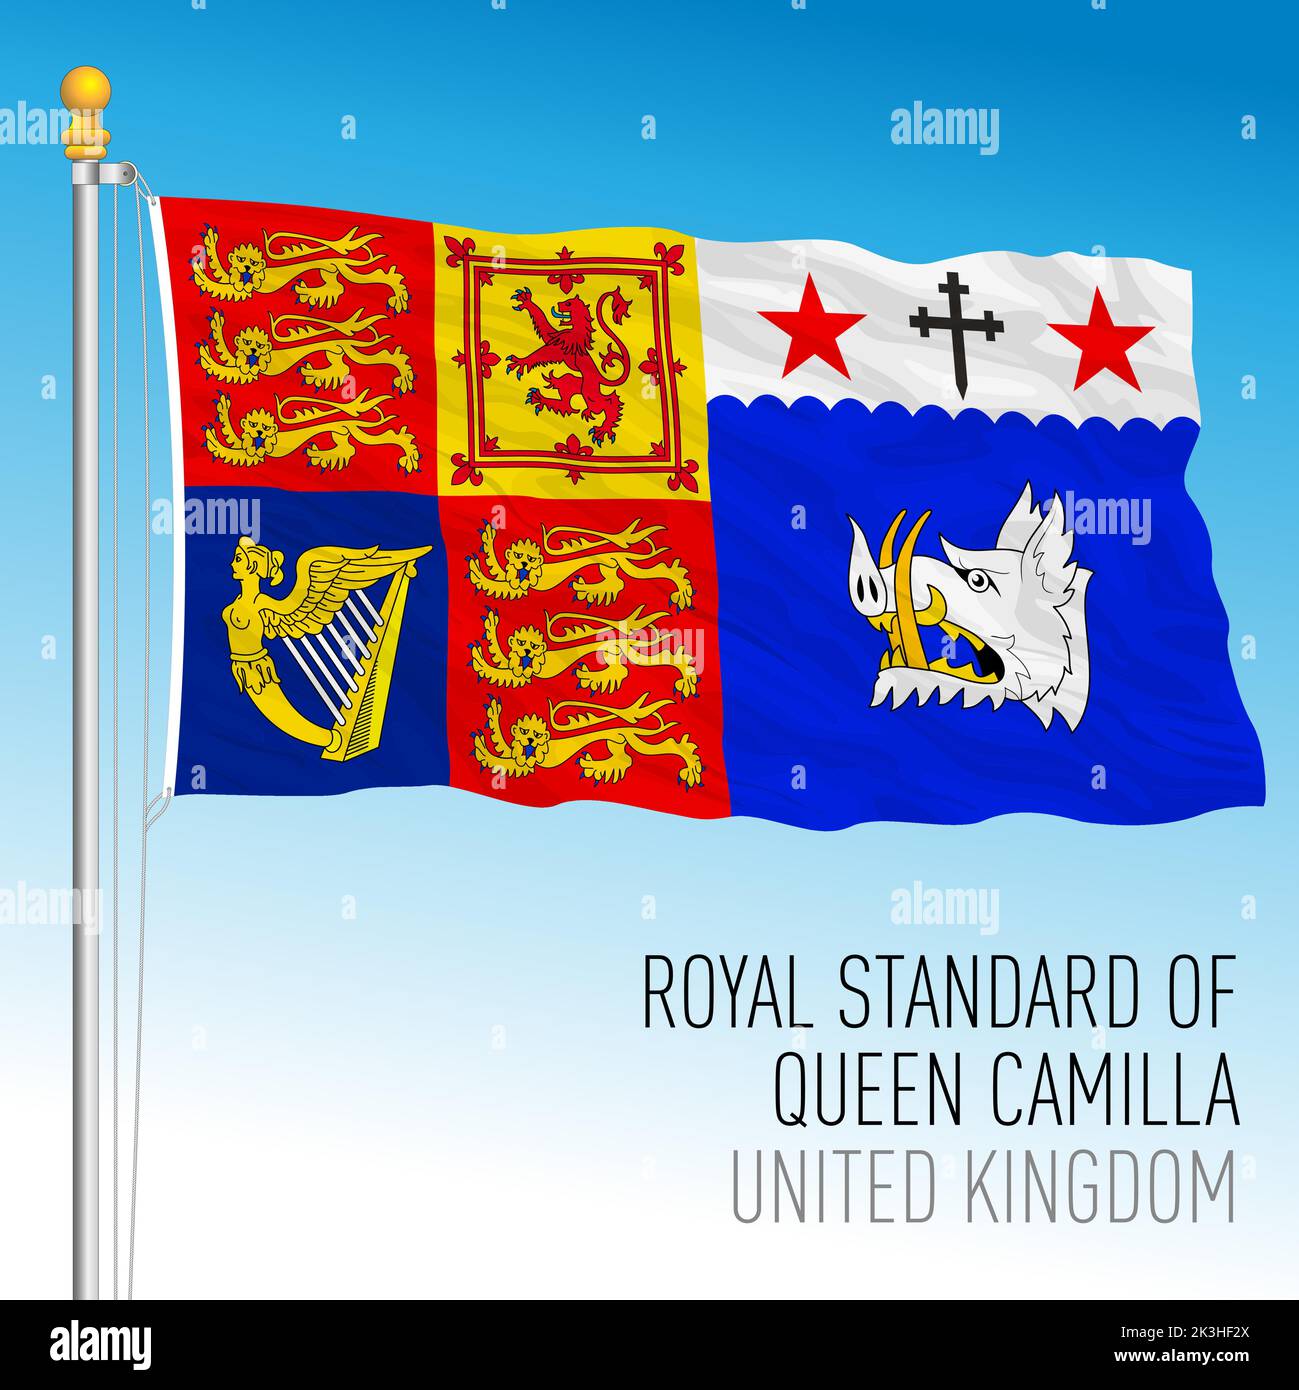 Camilla Queen Royal Standard, bandiera del Regno Unito, Queen Consort of the King Charles Third, 2022 Illustrazione Vettoriale